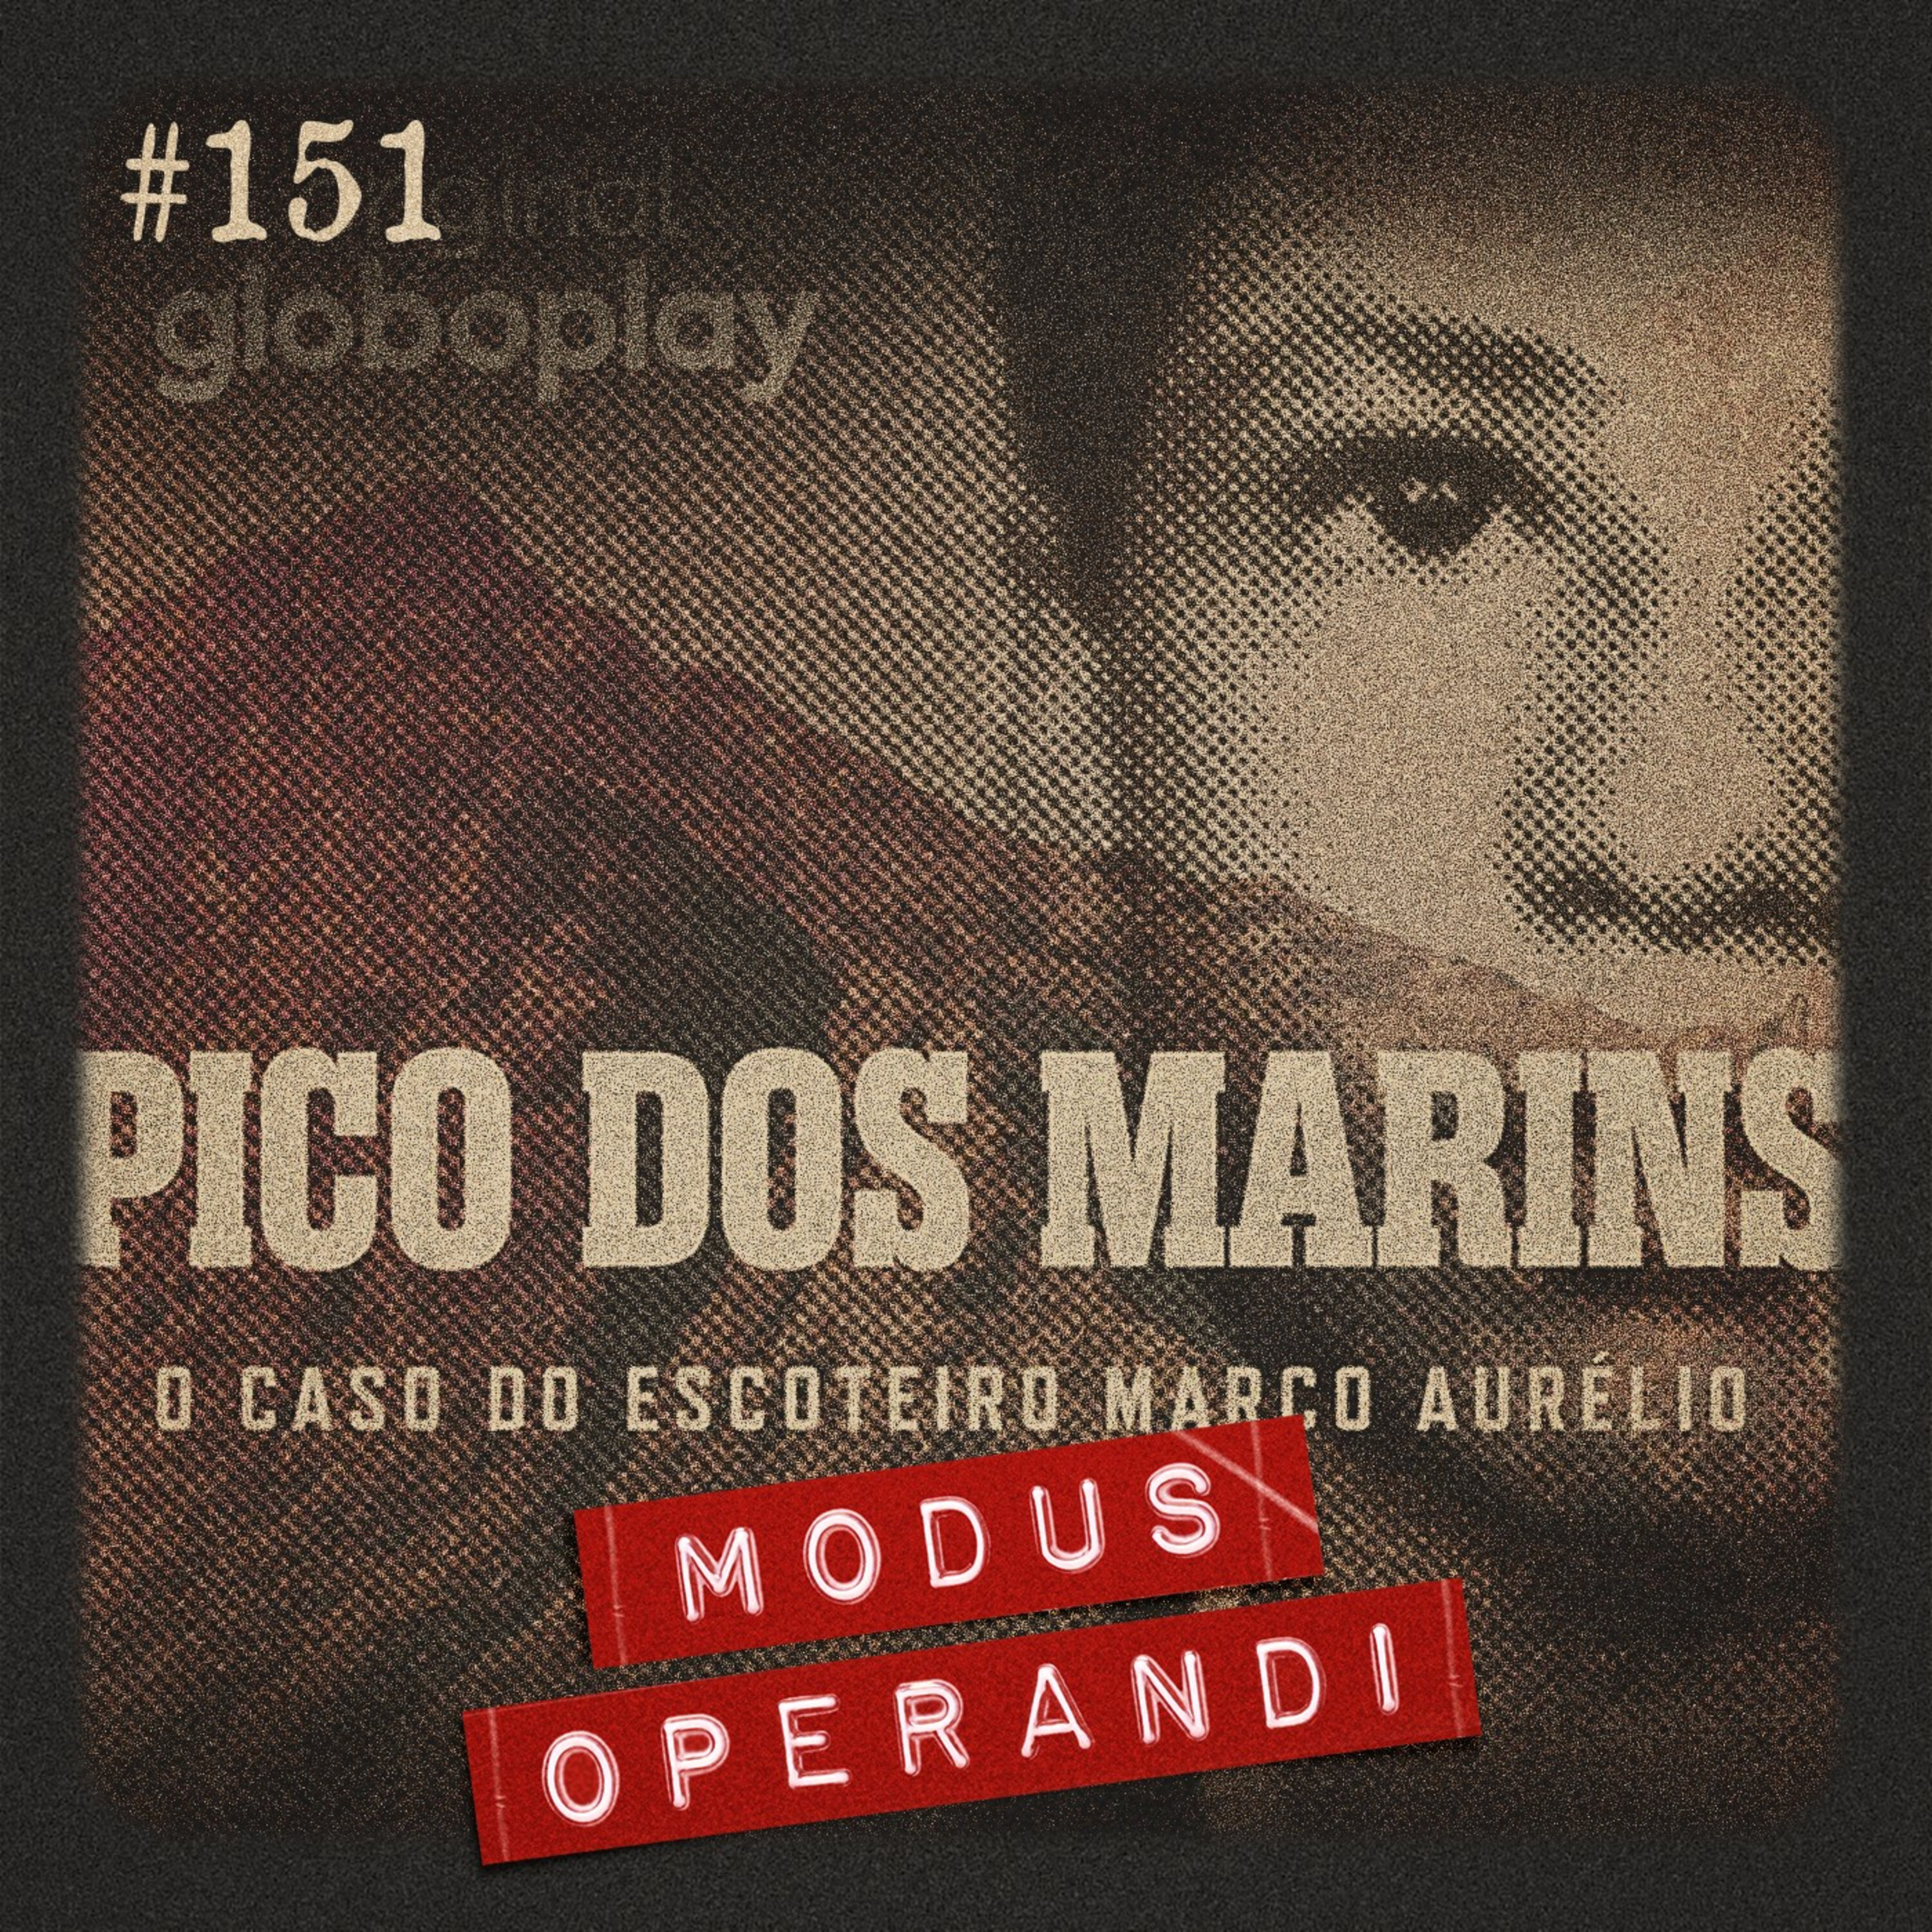 #151 - Pico dos Marins: teorias do caso com Marcelo Mesquita